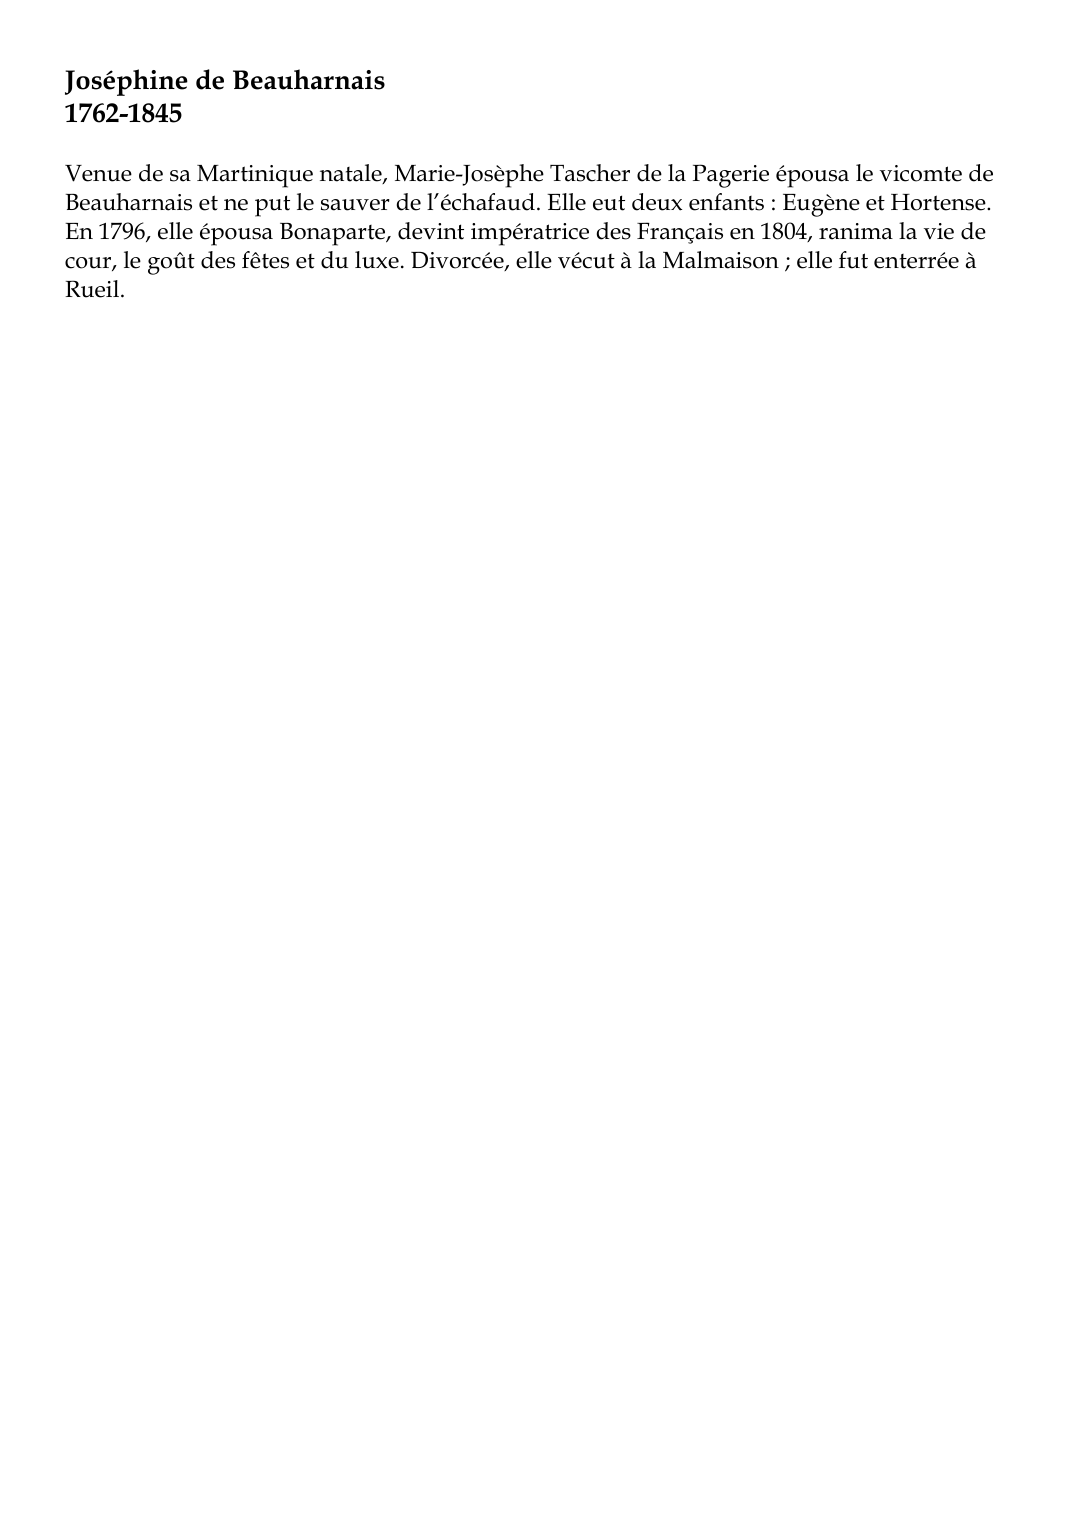 Prévisualisation du document Joséphine de Beauharnais1762-1845Venue de sa Martinique natale, Marie-Josèphe Tascher de la Pagerie épousa le vicomte deBeauharnais et ne put le sauver de l'échafaud.